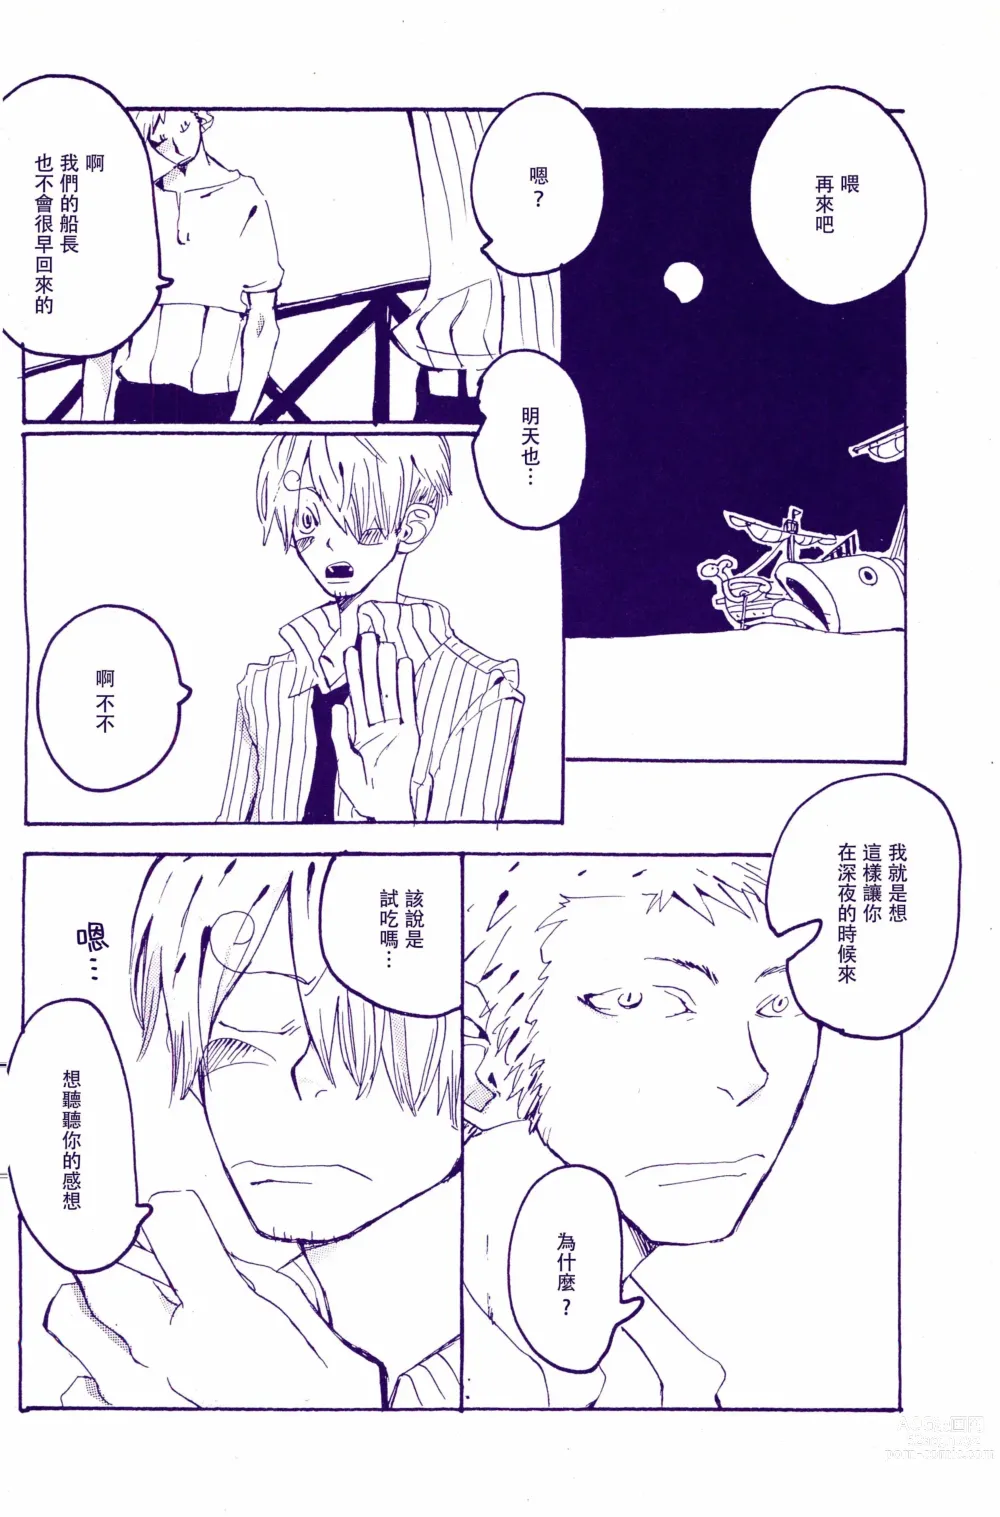 Page 9 of doujinshi 在暴风雨的夜晚 1